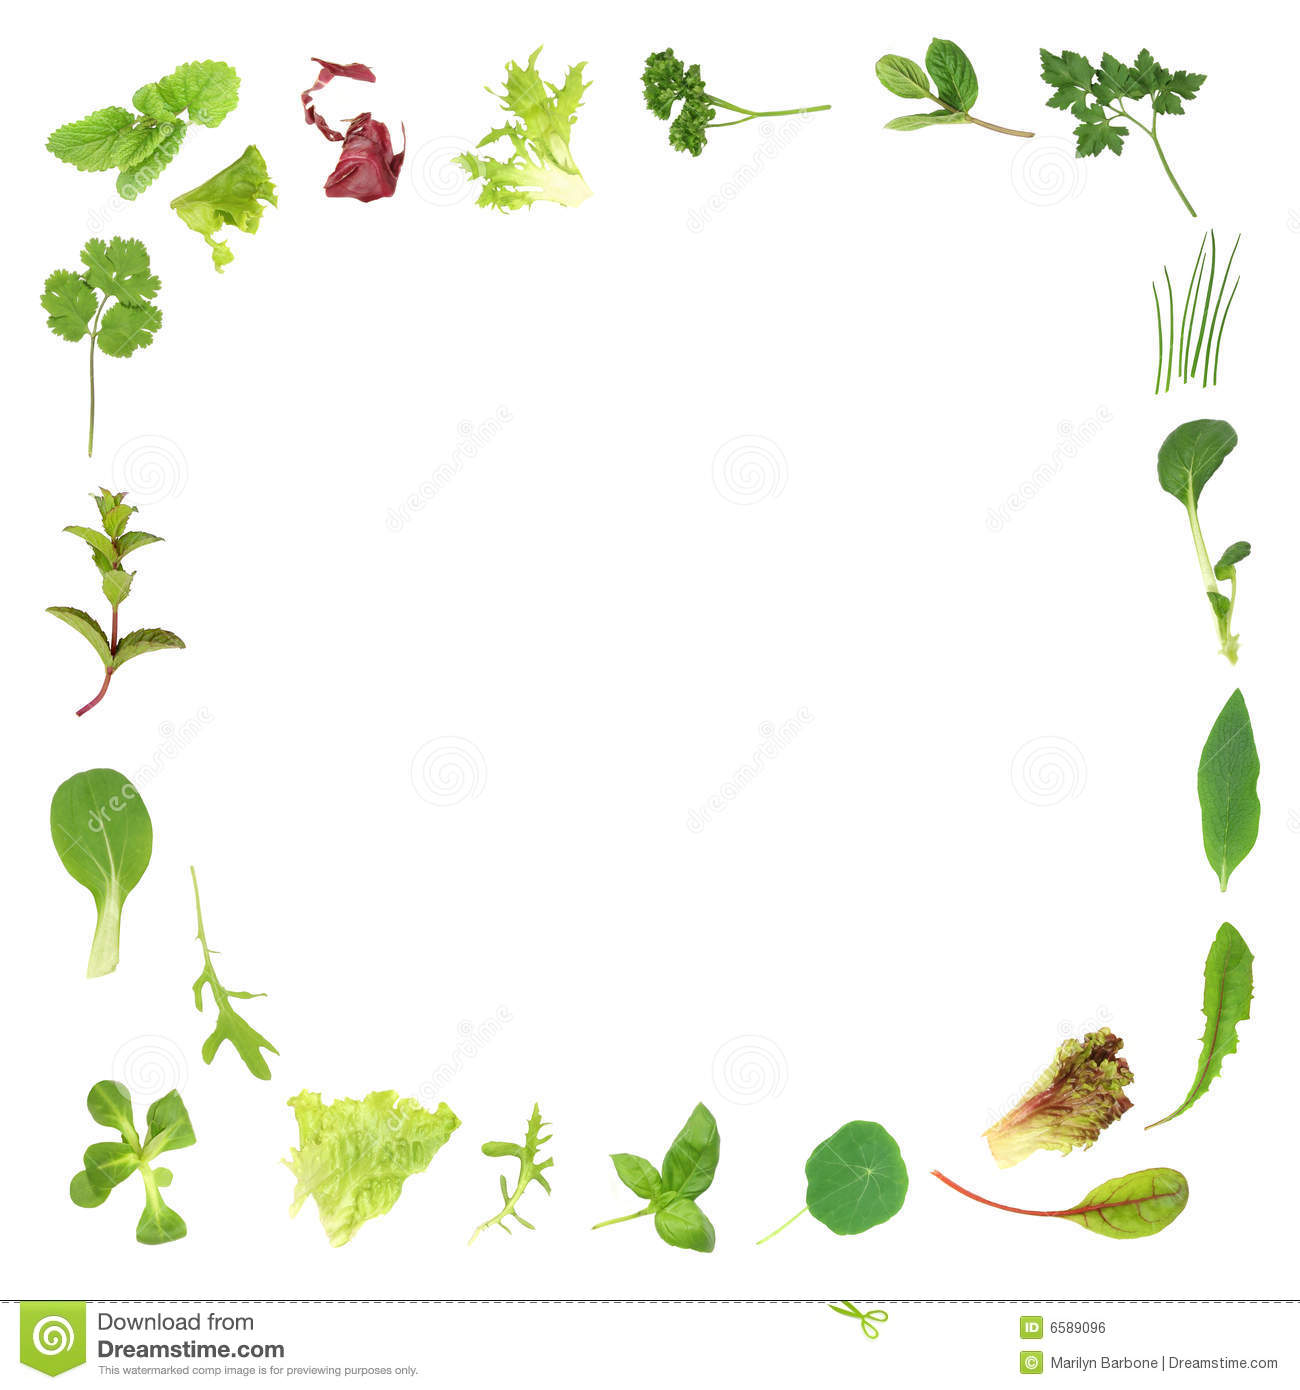 Salad Lettuce And Herb Leaf Border Over White Background